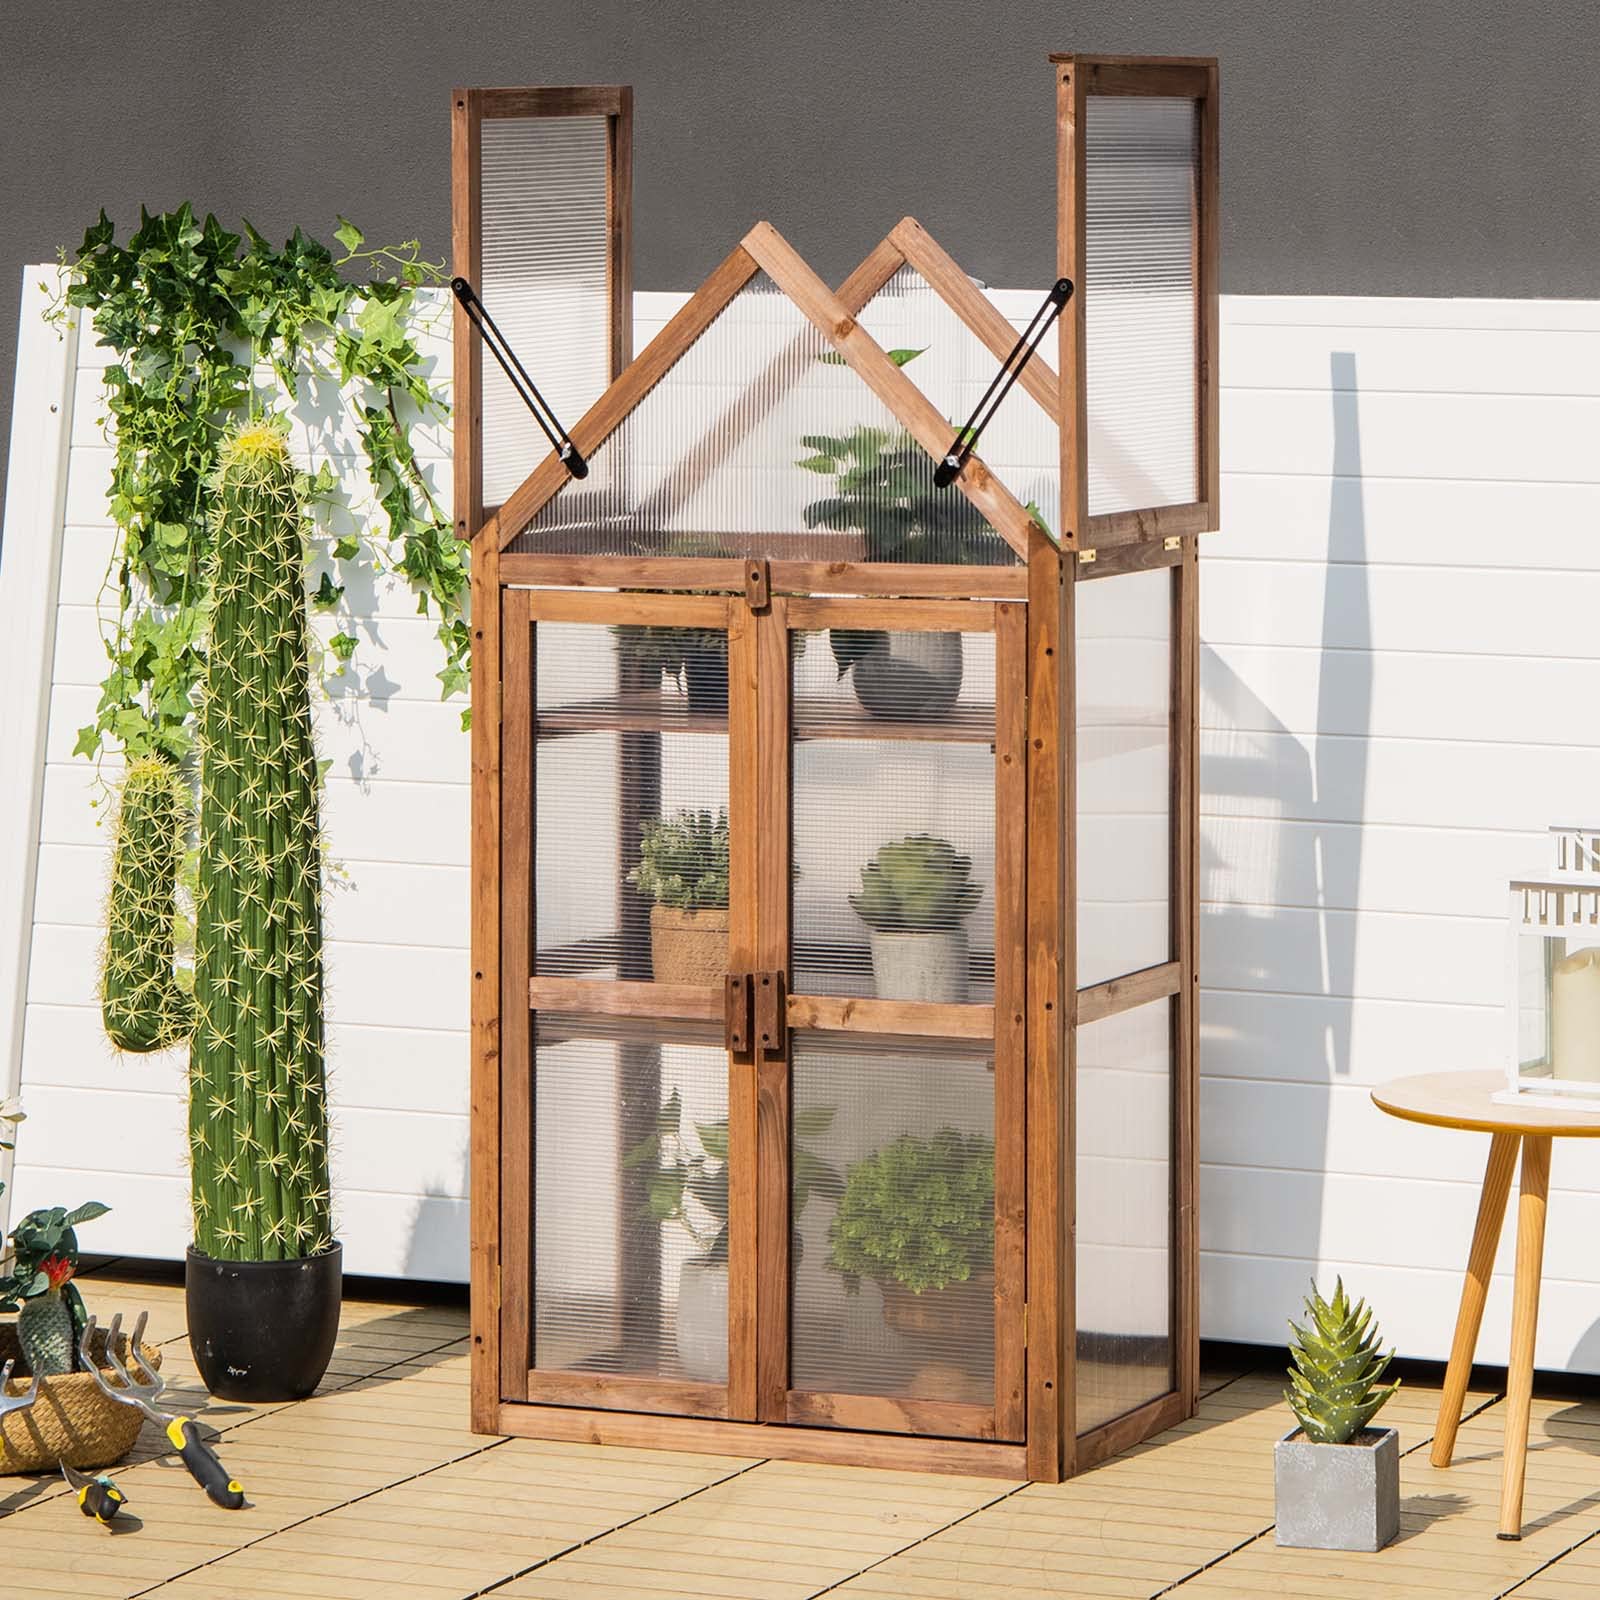 Giantex 3-Tier Garden Cold Frame, Portable Wooden Mini Greenhouse Storage Shelves